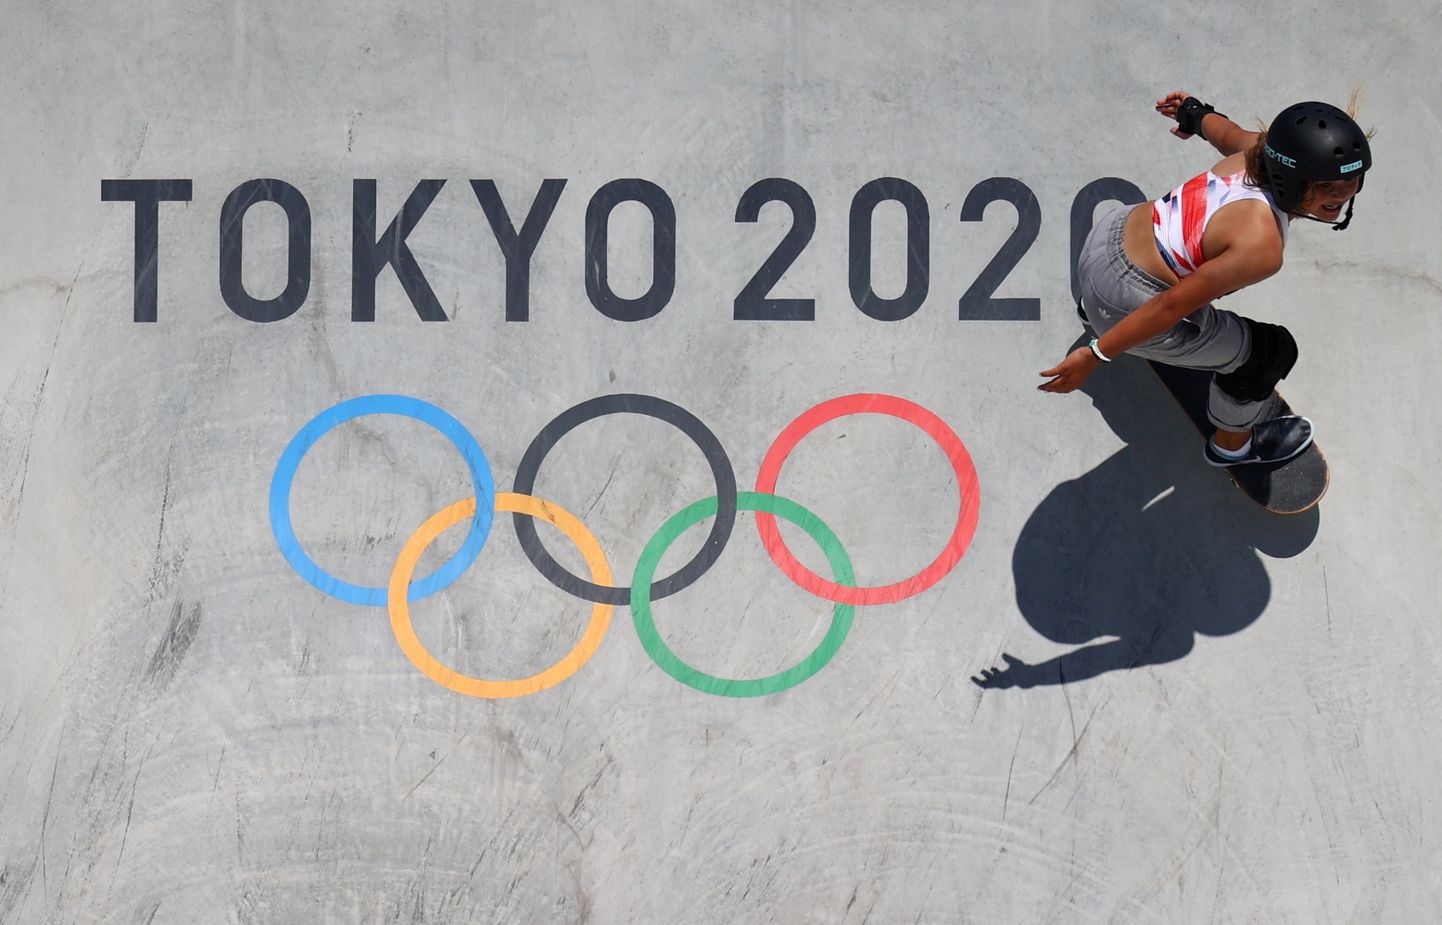 Rulasport tegi tänavu Tokyos olümpiadebüüdi.